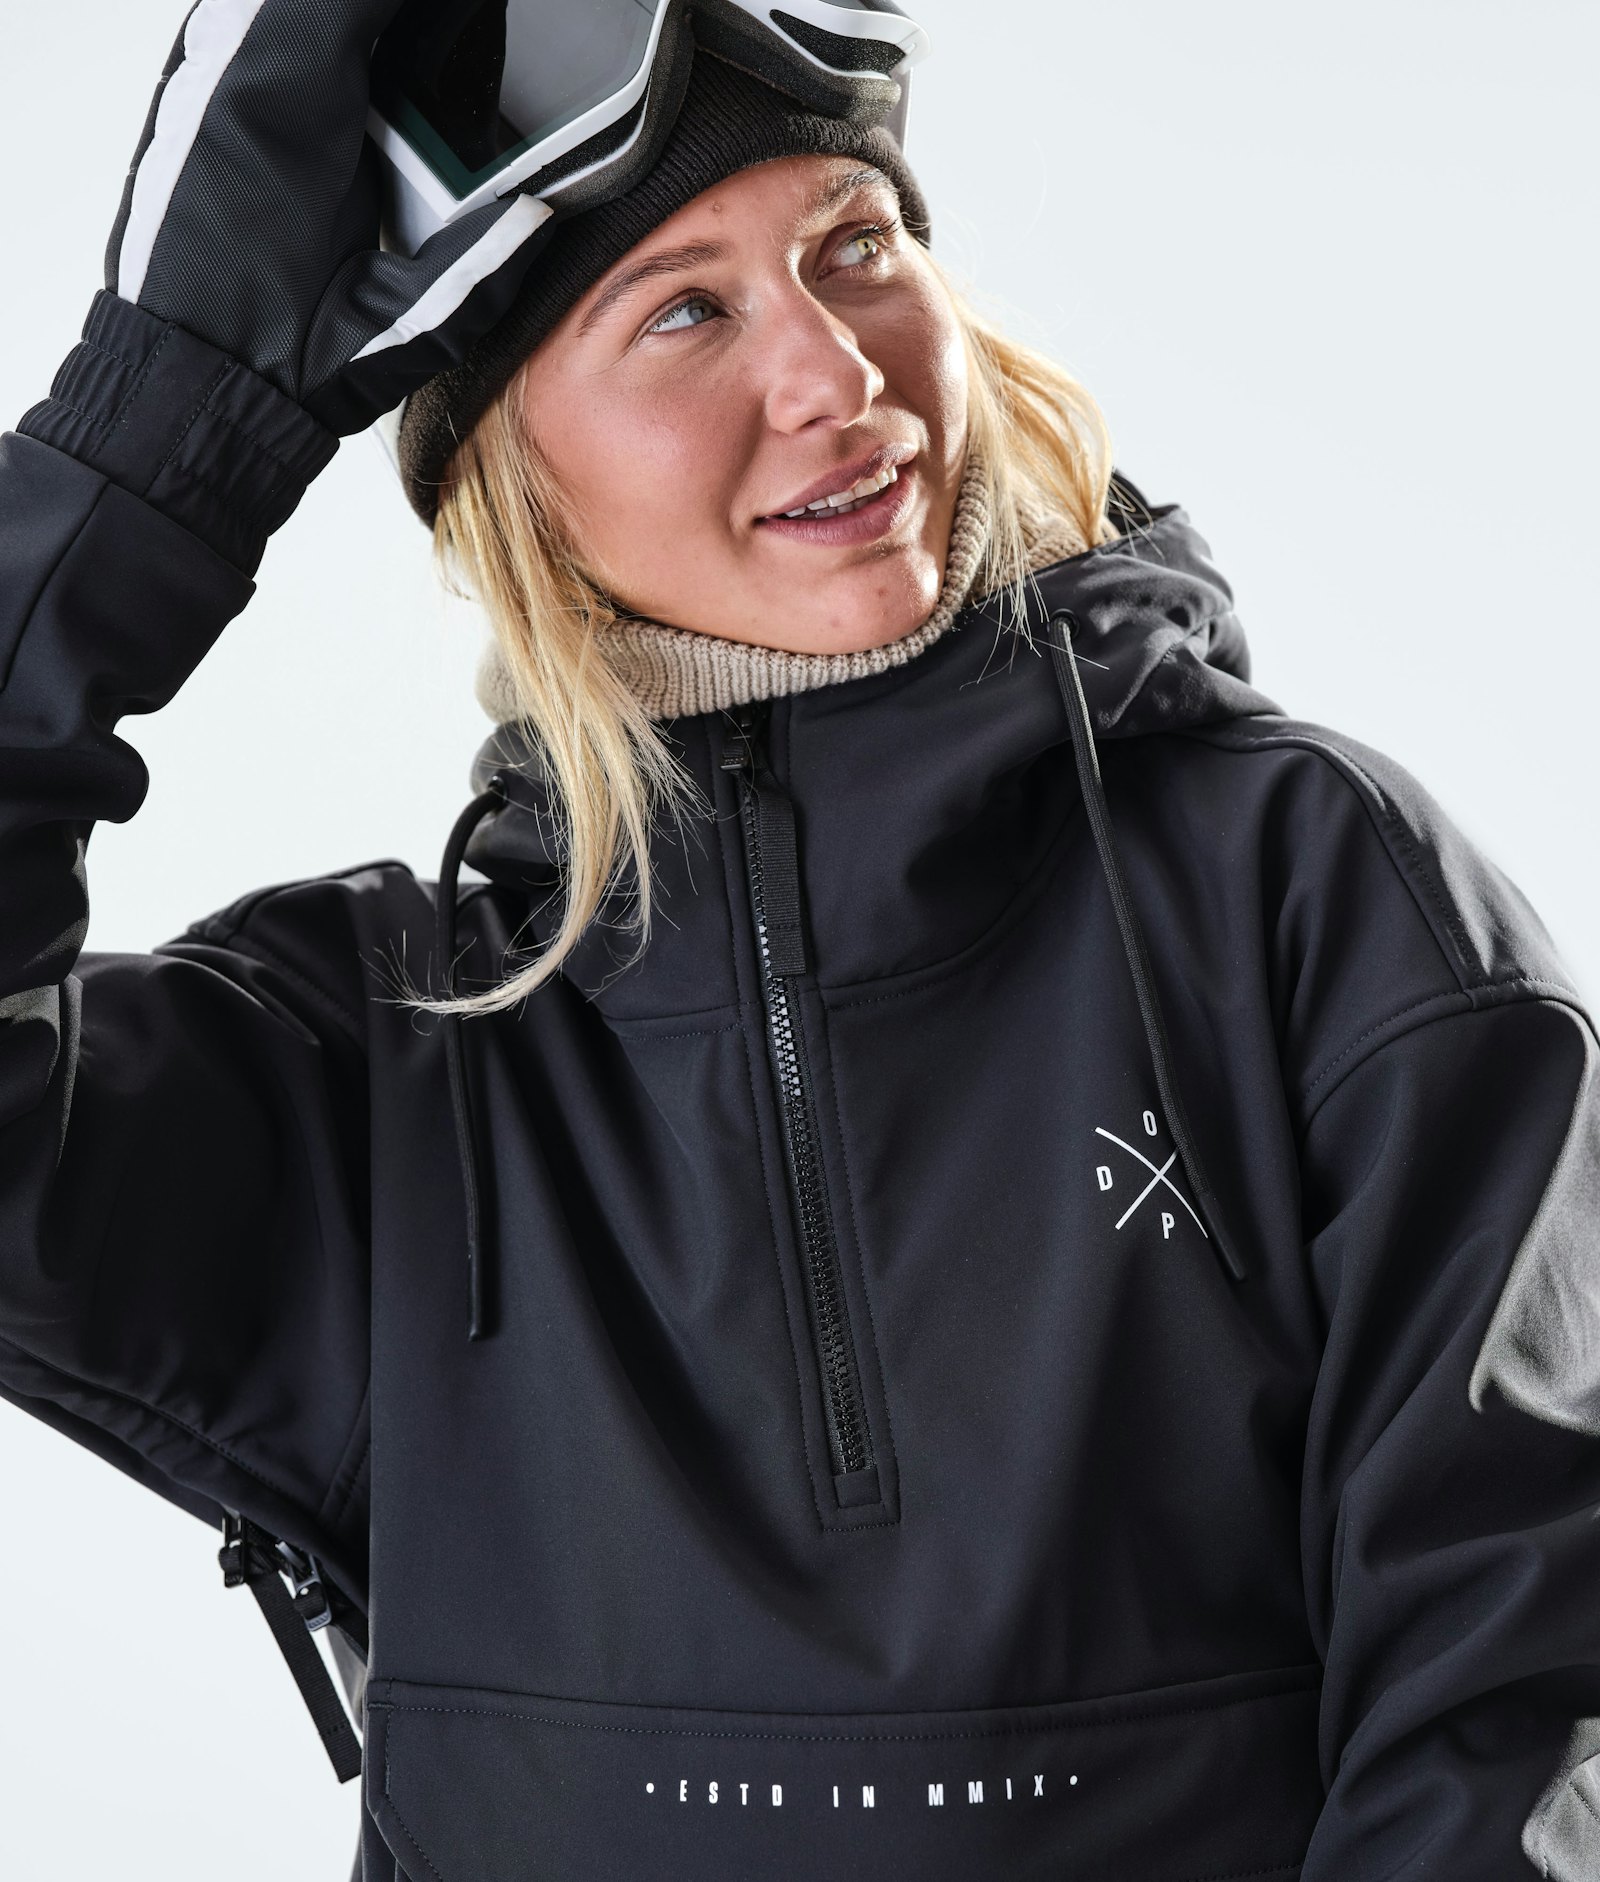 Cyclone W 2020 Ski Jacket Women Black